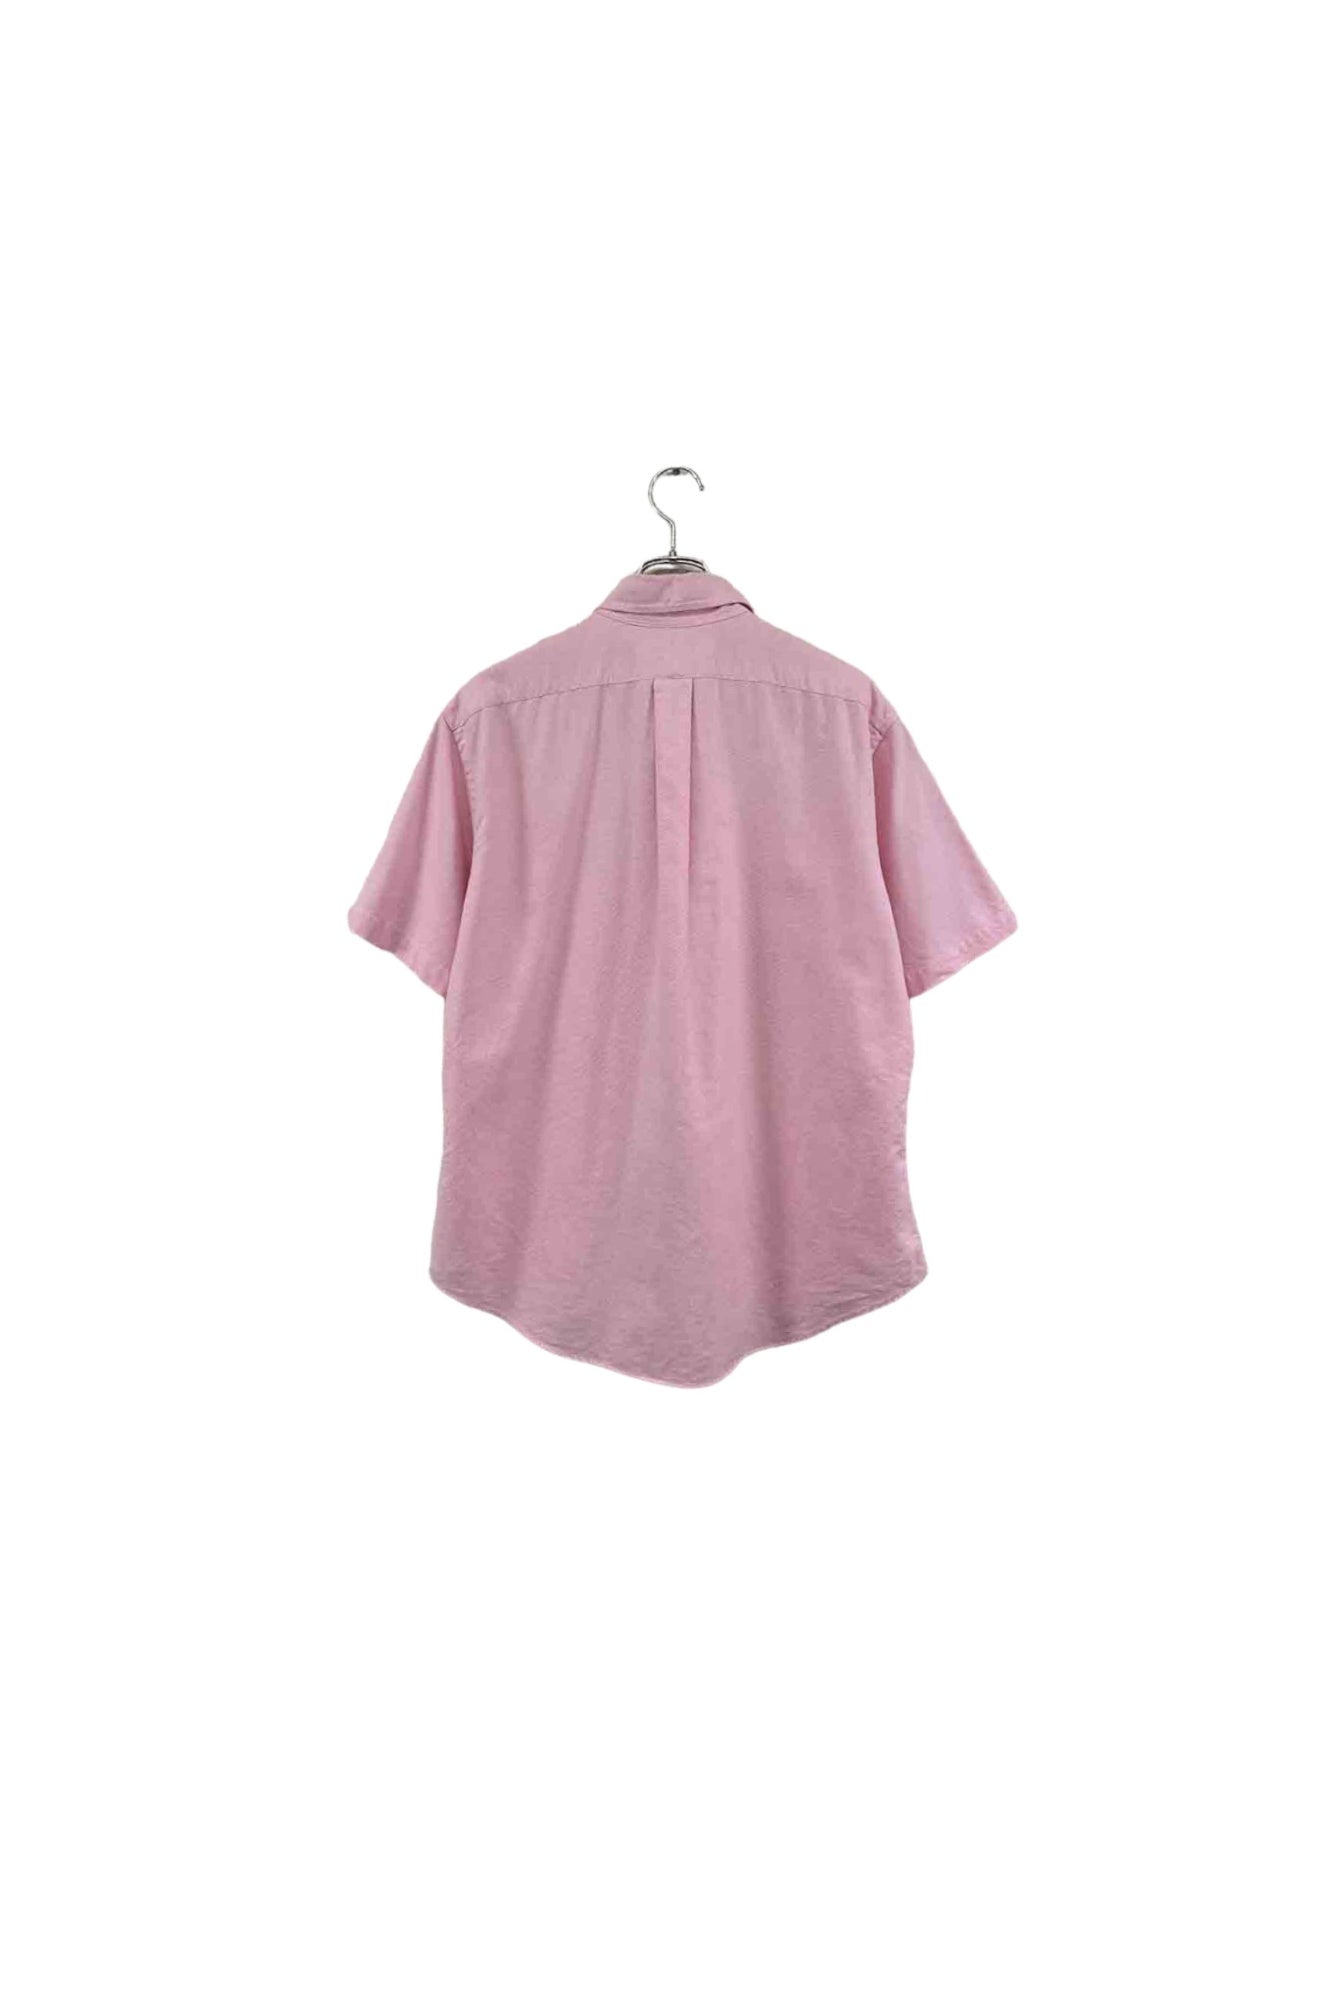 90 年代 Ralph Lauren 粉色衬衫